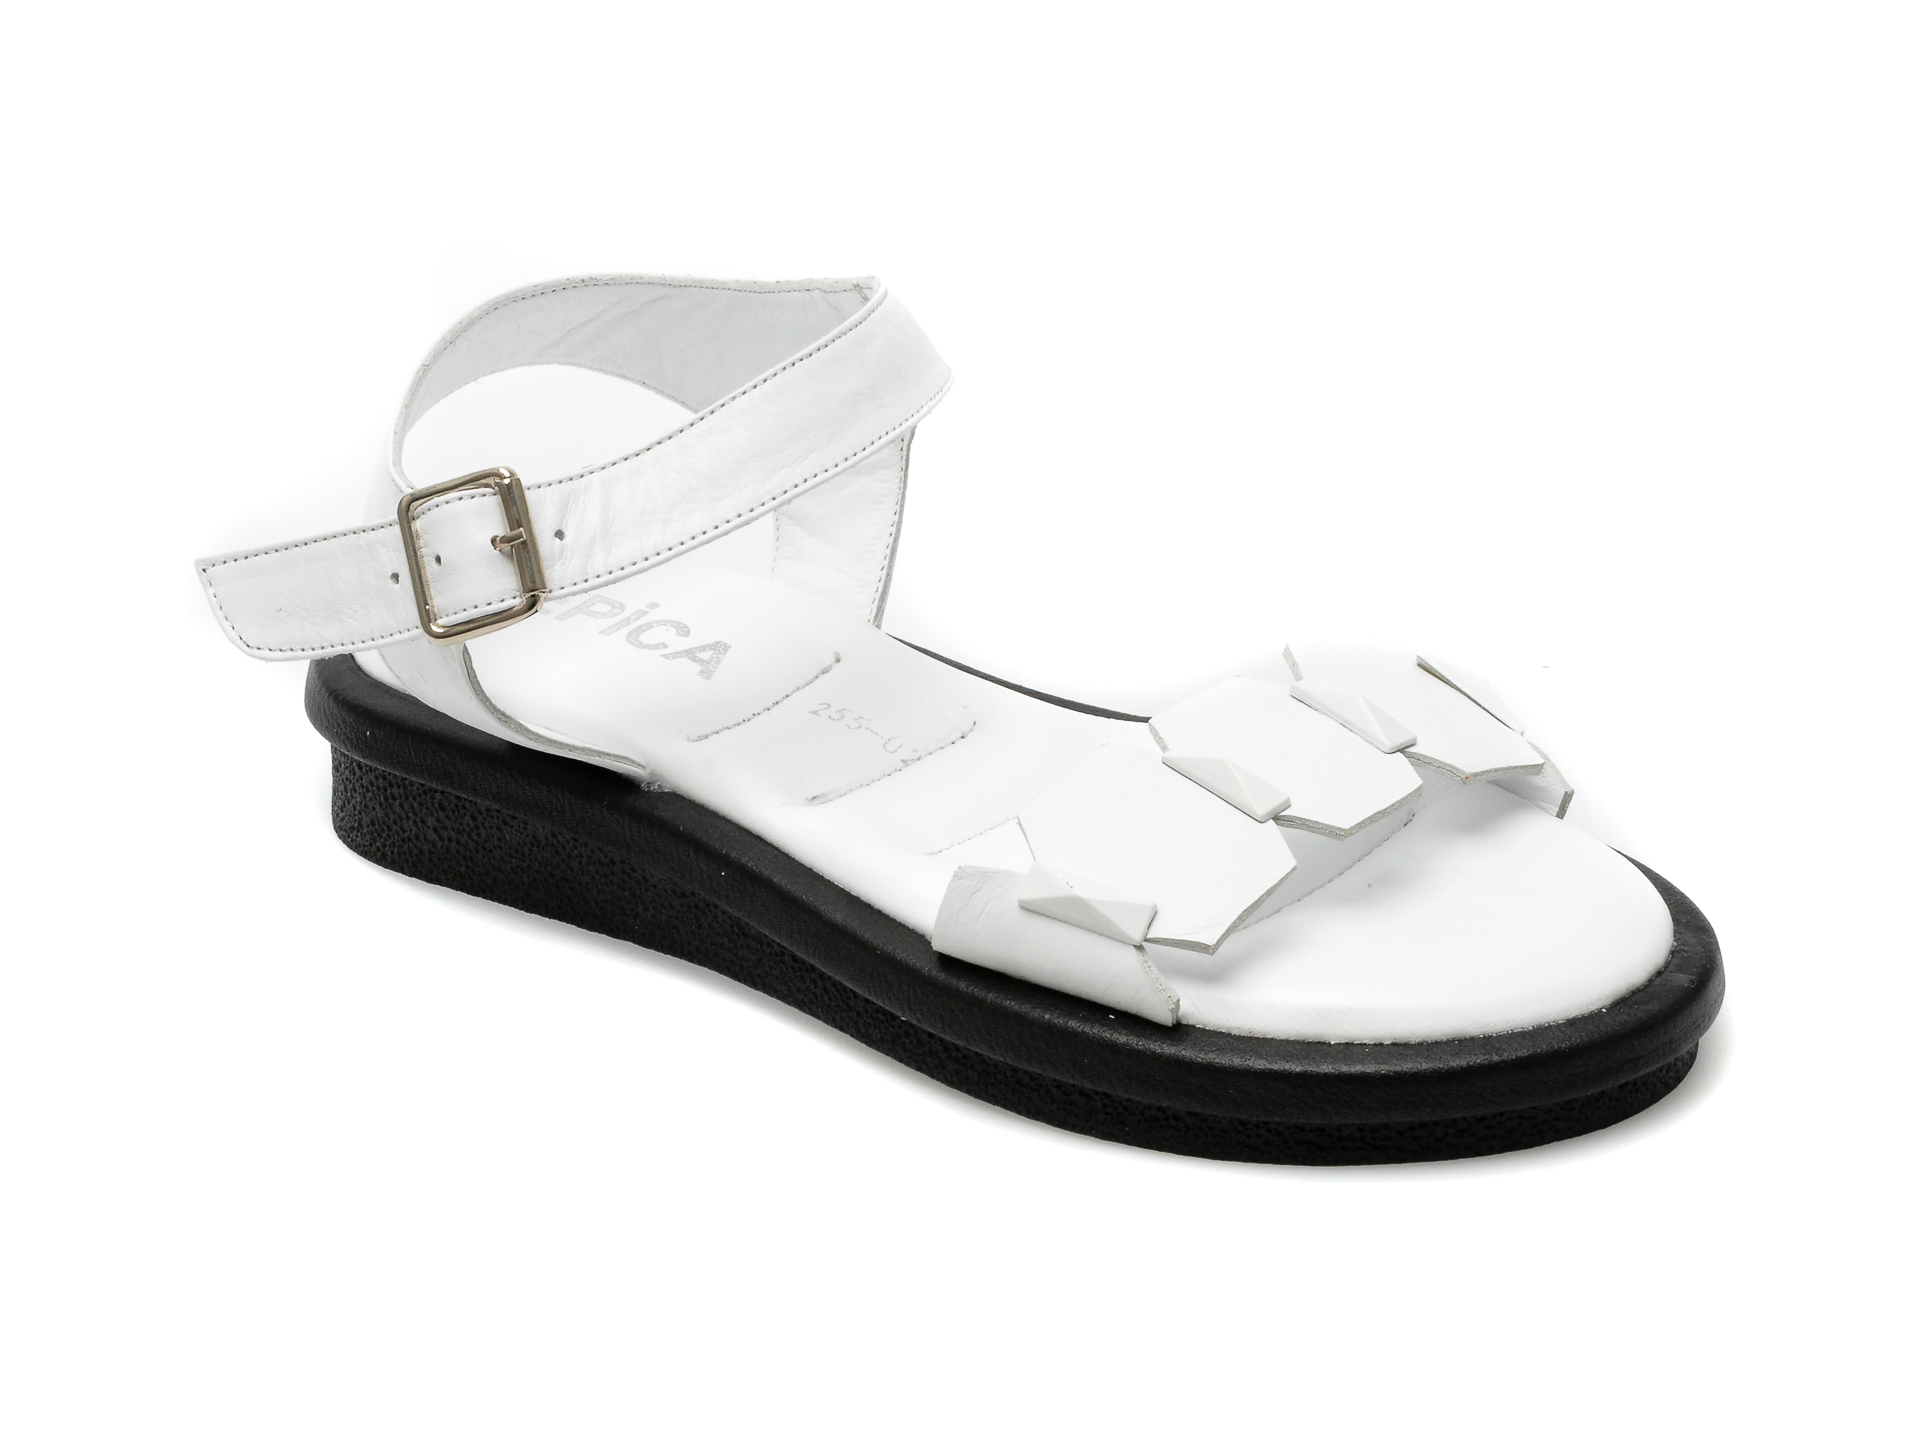 Sandale EPICA albe, 471255, din piele naturala Femei 2023-05-28